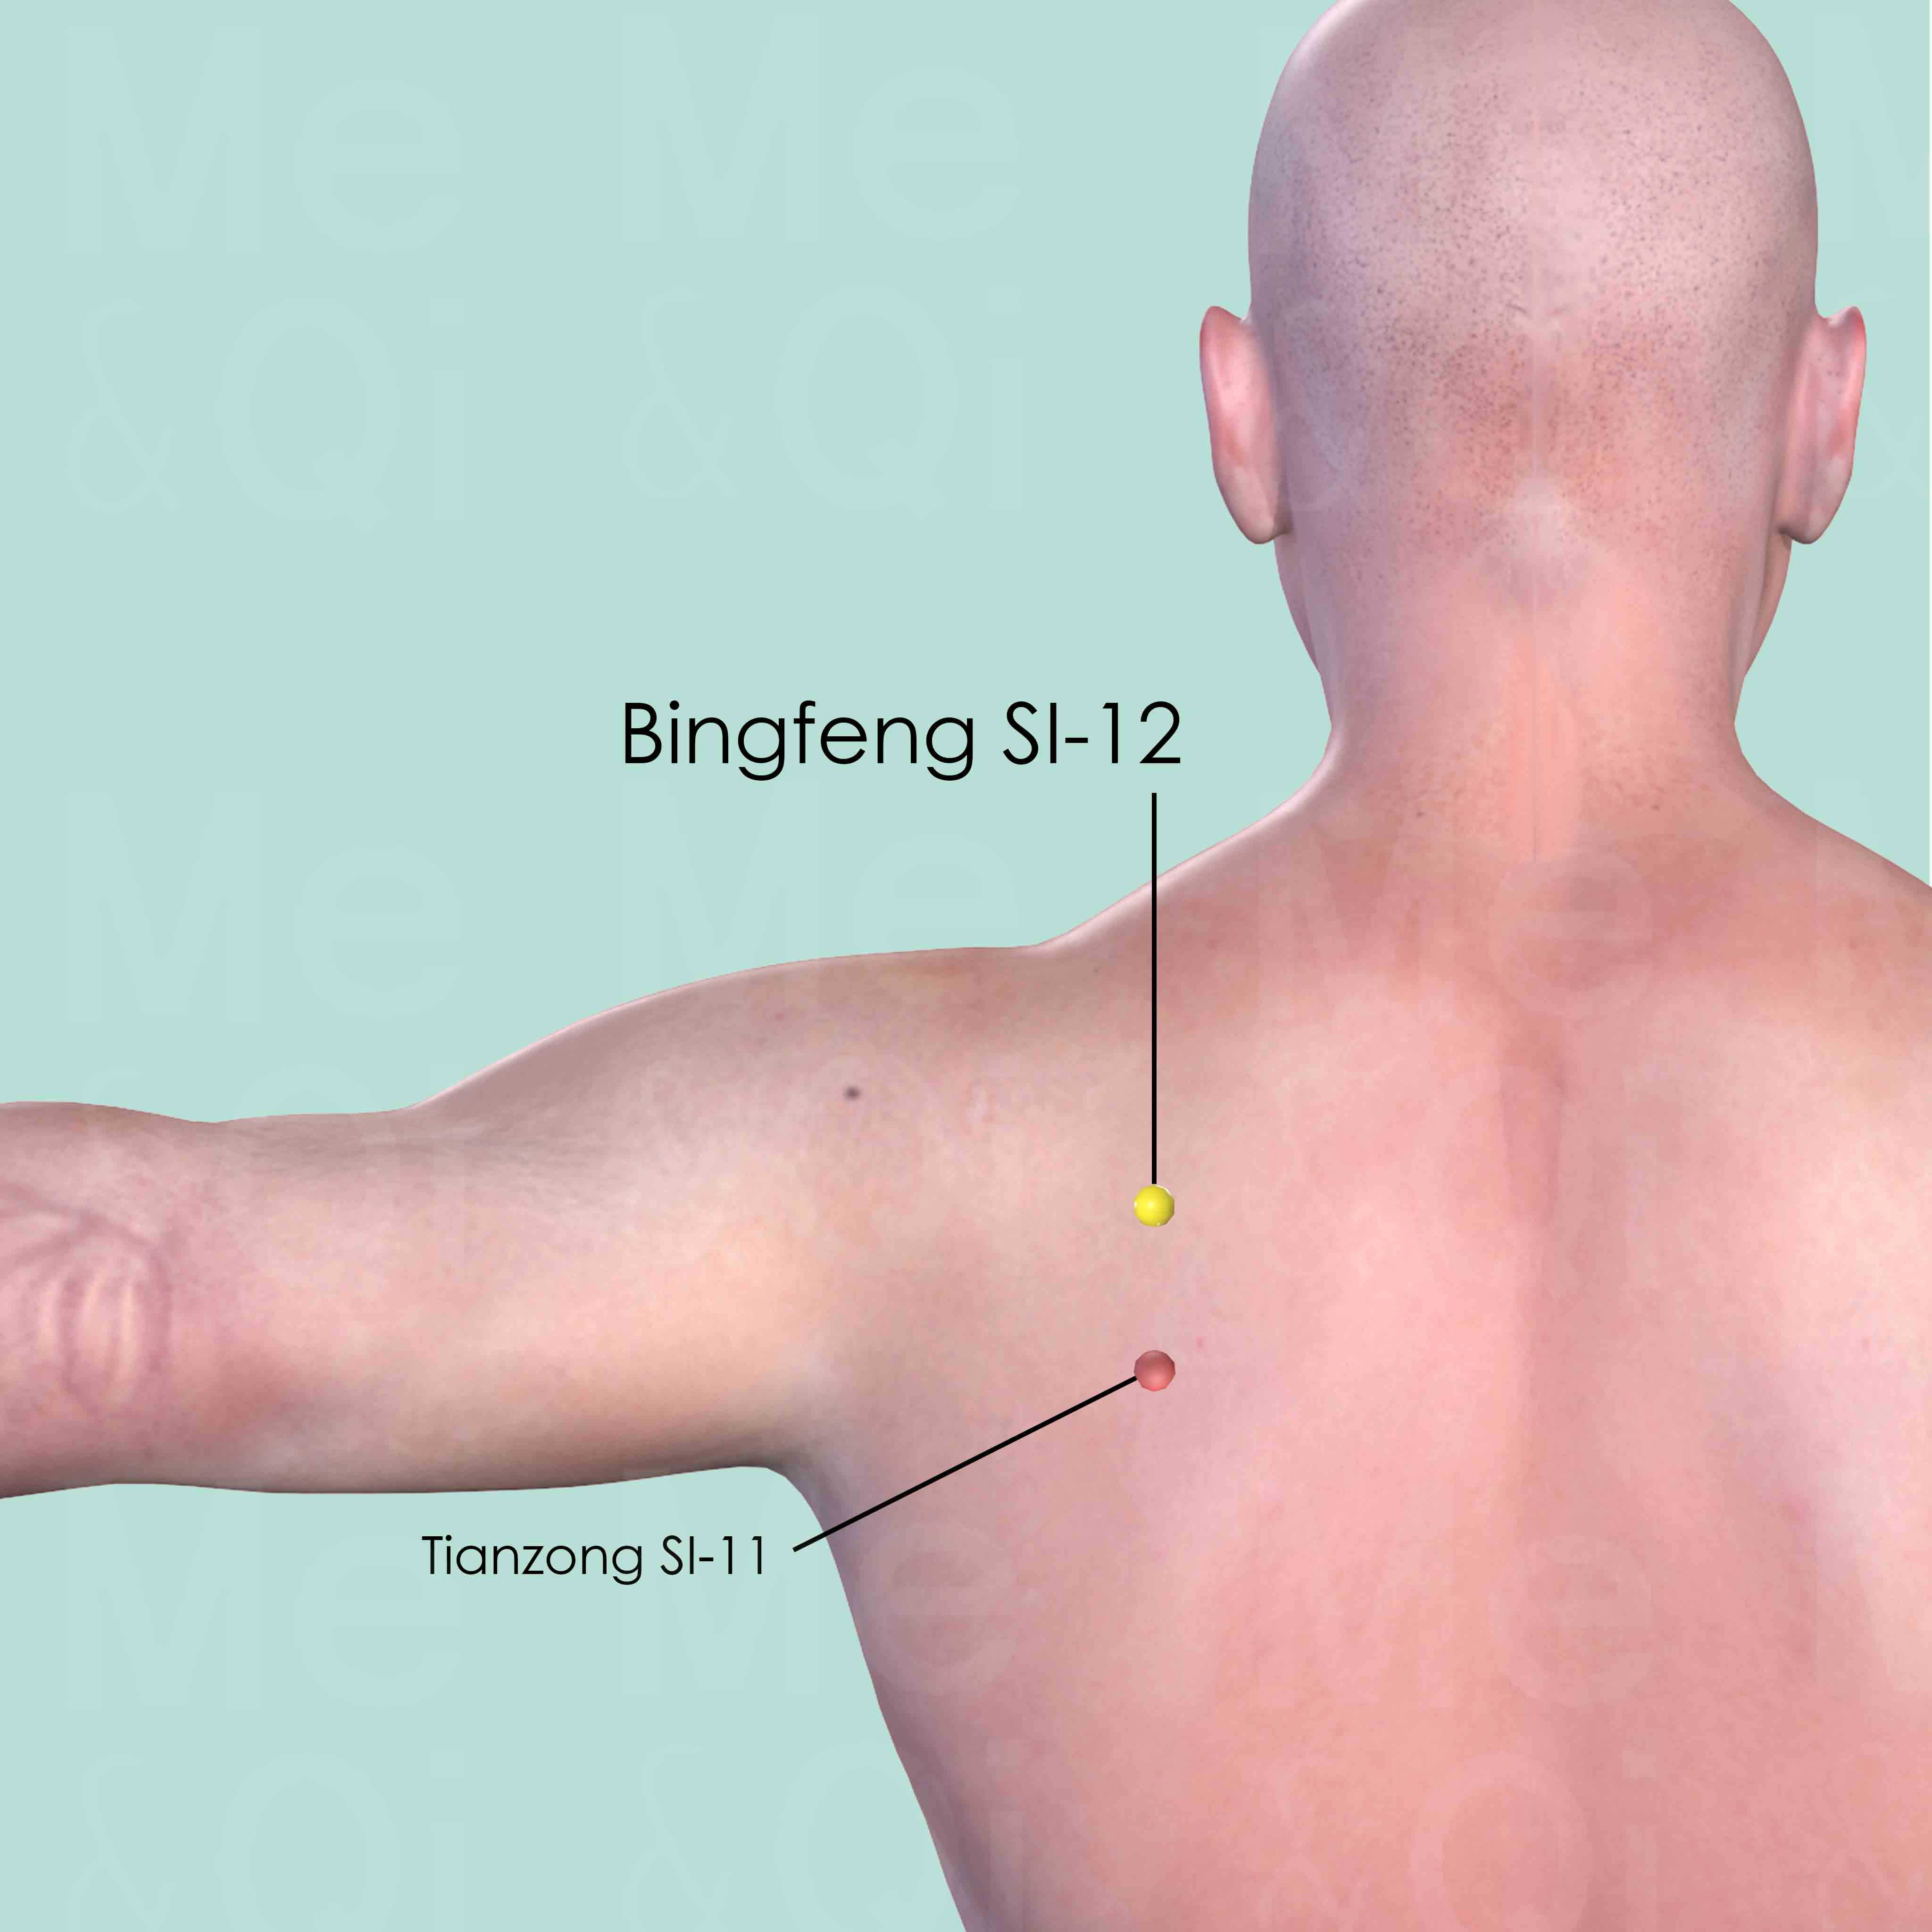 Bingfeng SI-12